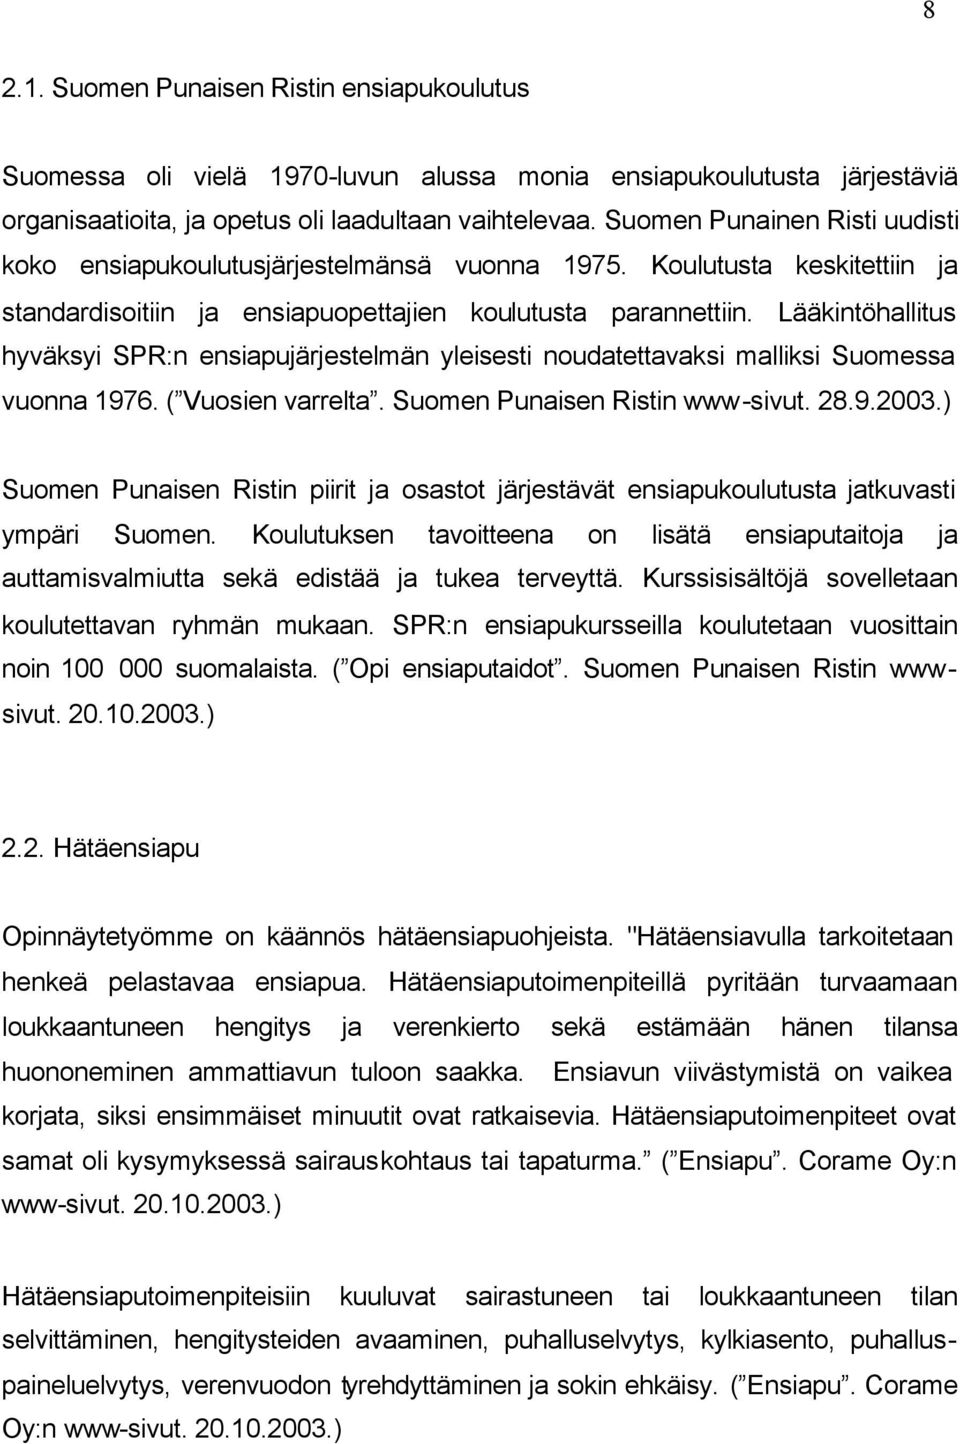 Lääkintöhallitus hyväksyi SPR:n ensiapujärjestelmän yleisesti noudatettavaksi malliksi Suomessa vuonna 1976. ( Vuosien varrelta. Suomen Punaisen Ristin www-sivut. 28.9.2003.